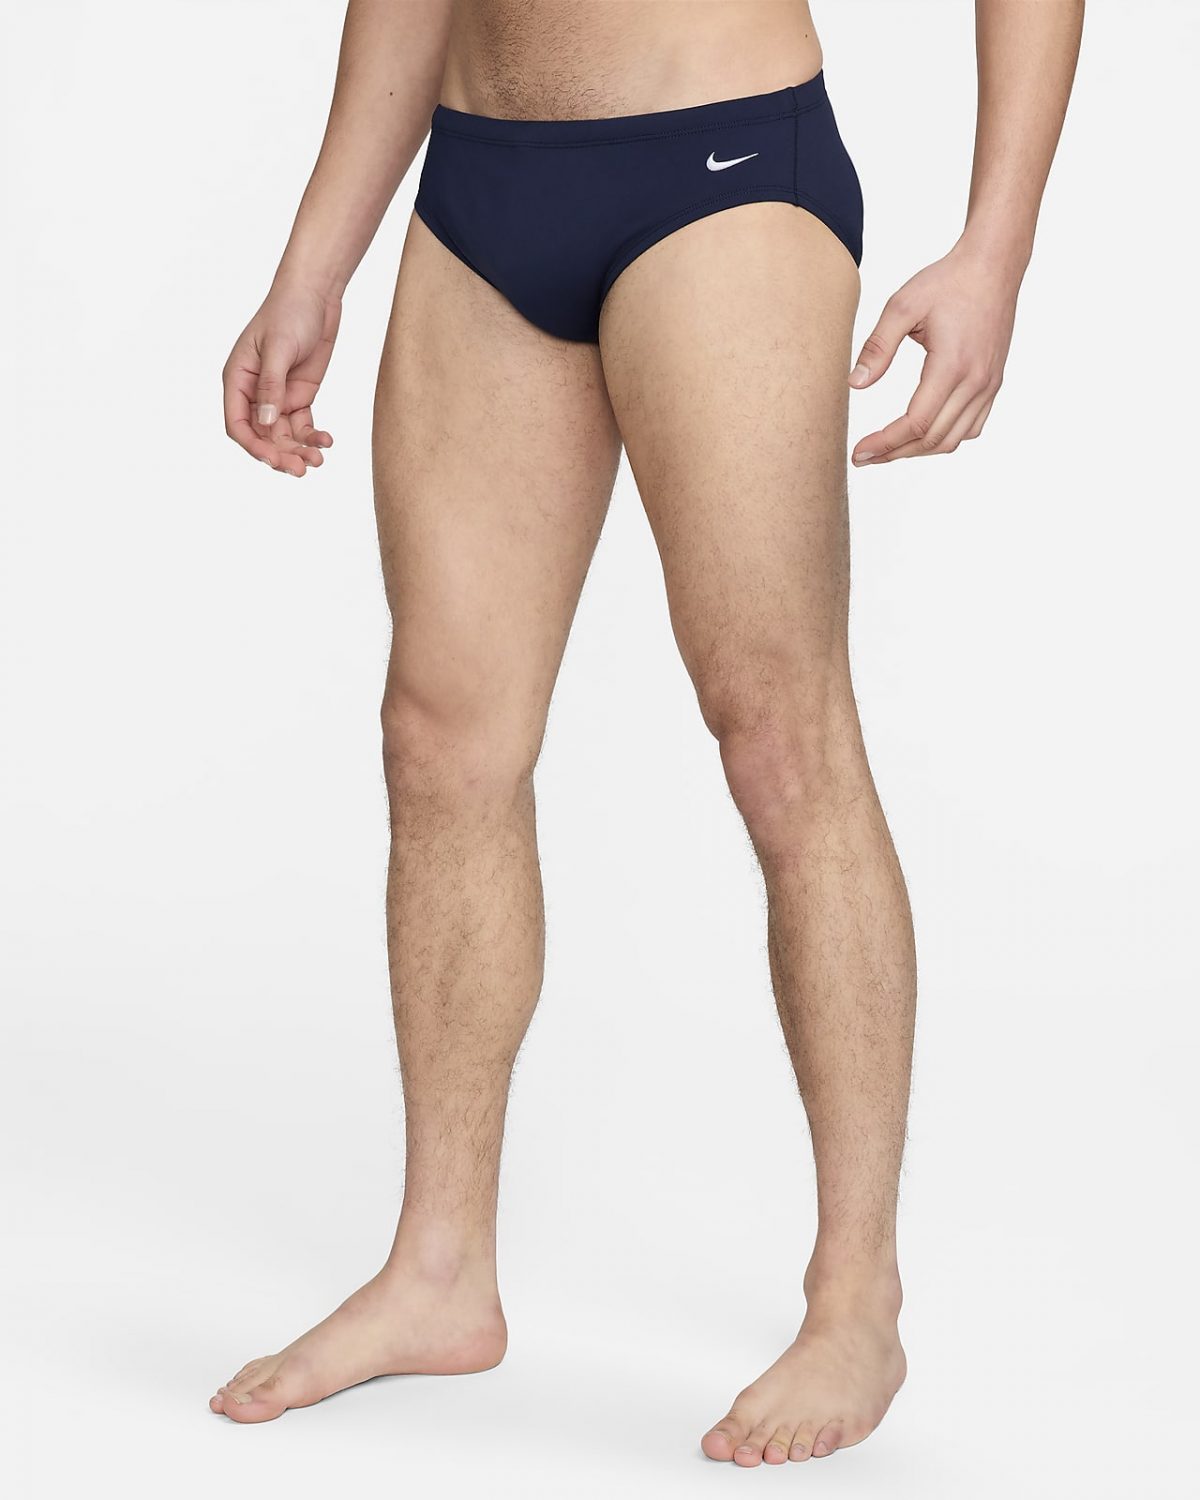 Мужские брюки Nike Swim Solid фото